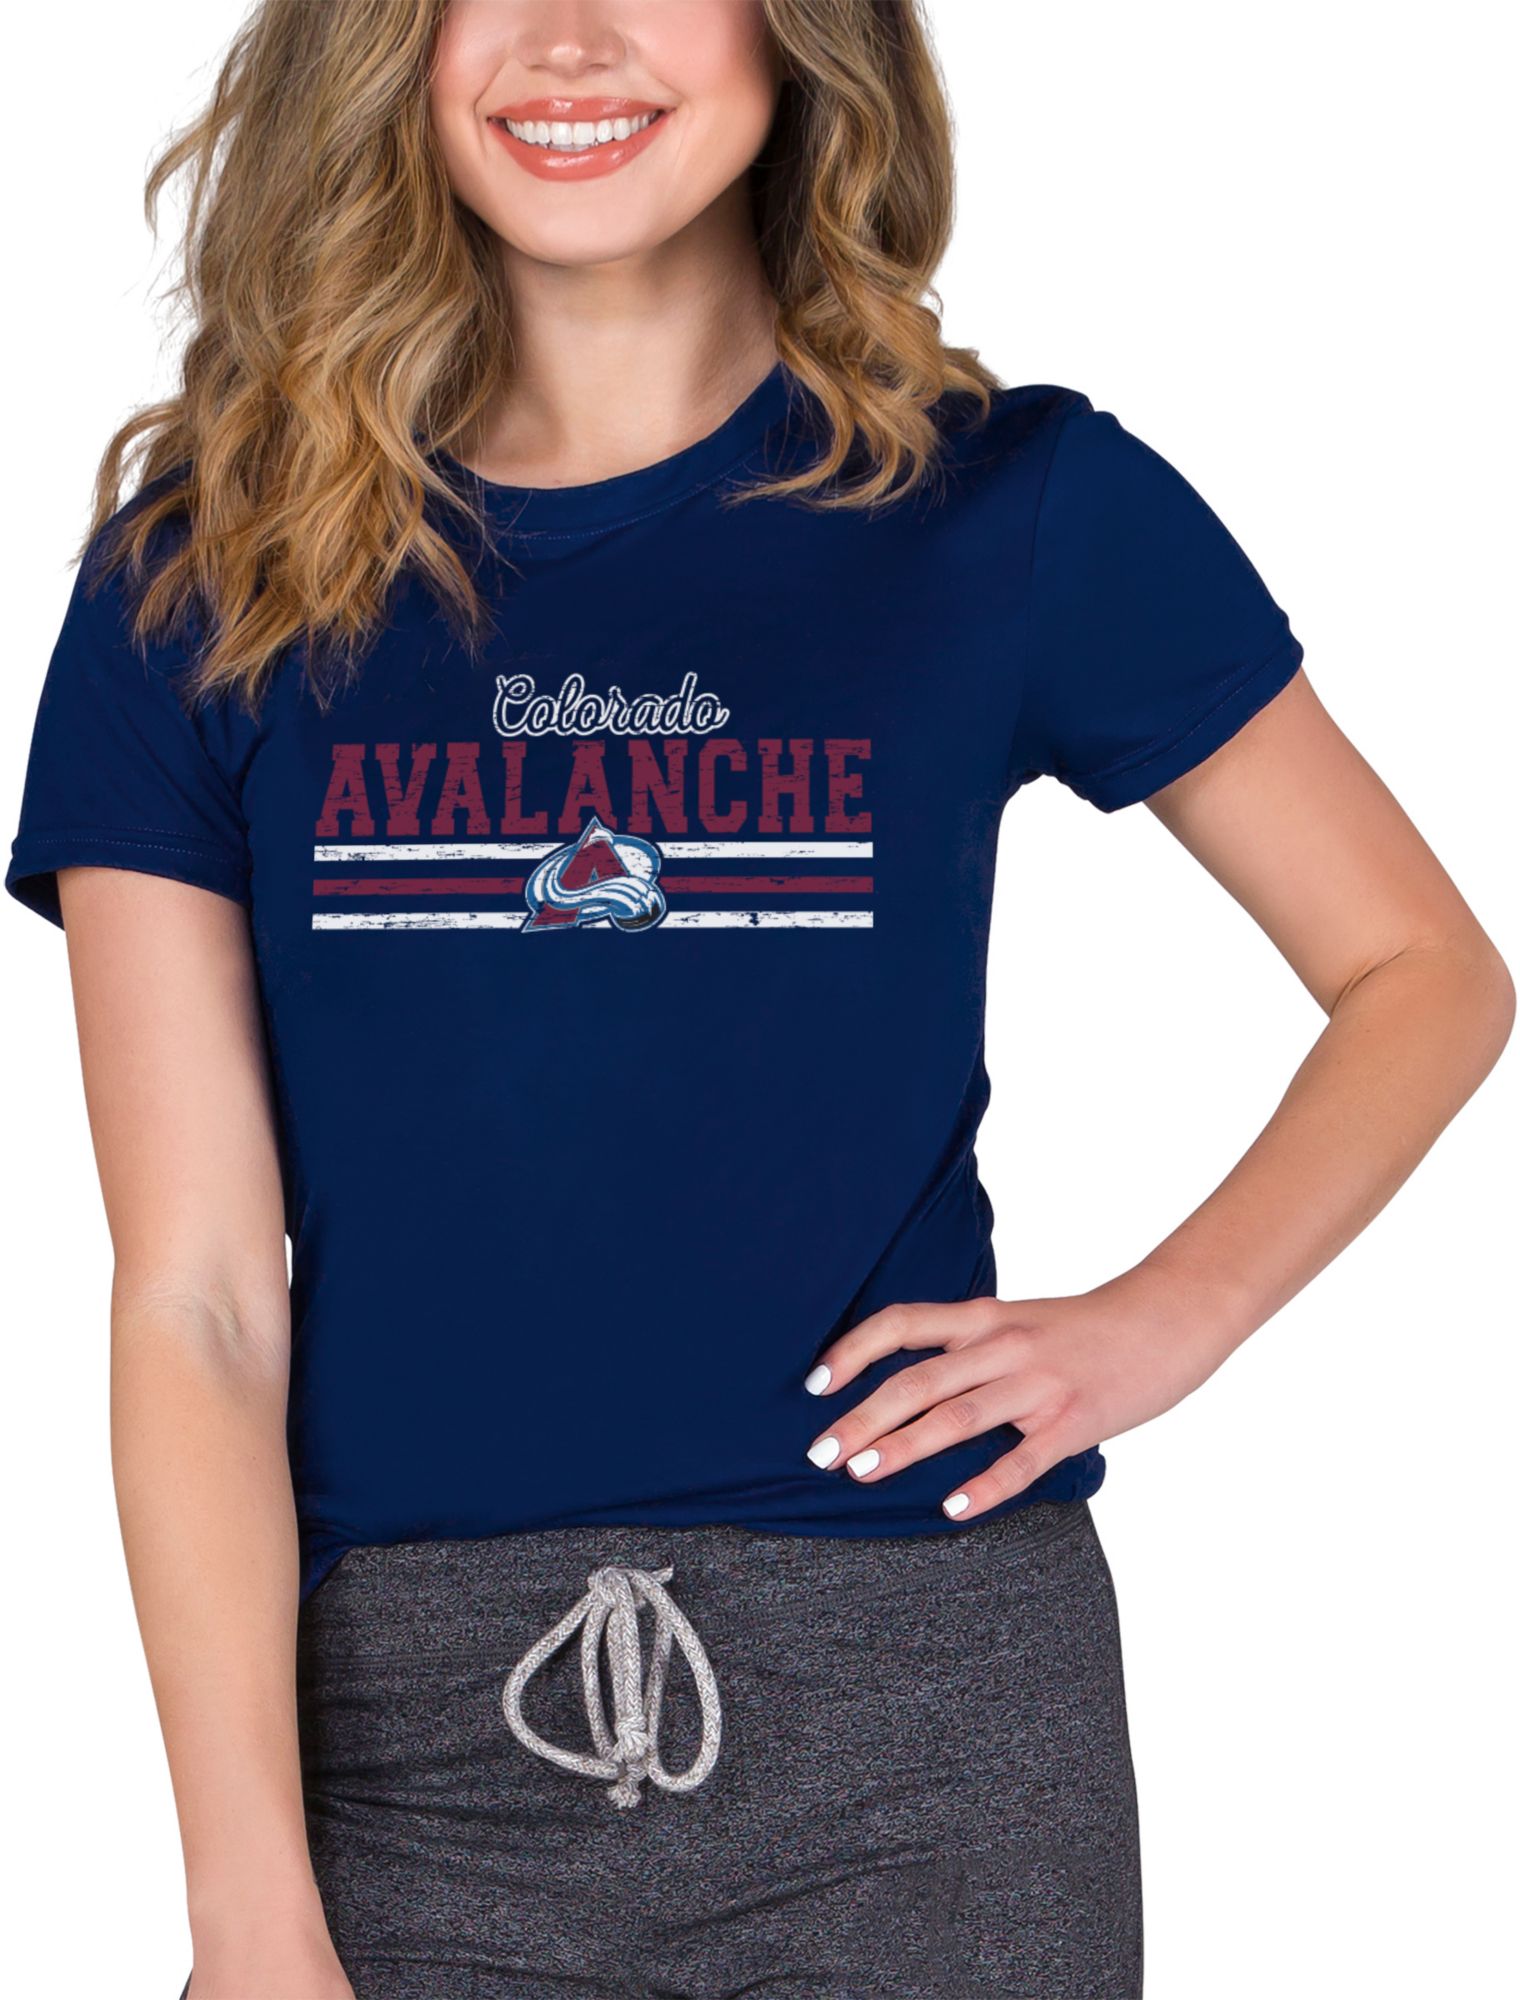 avalanche women's shirt